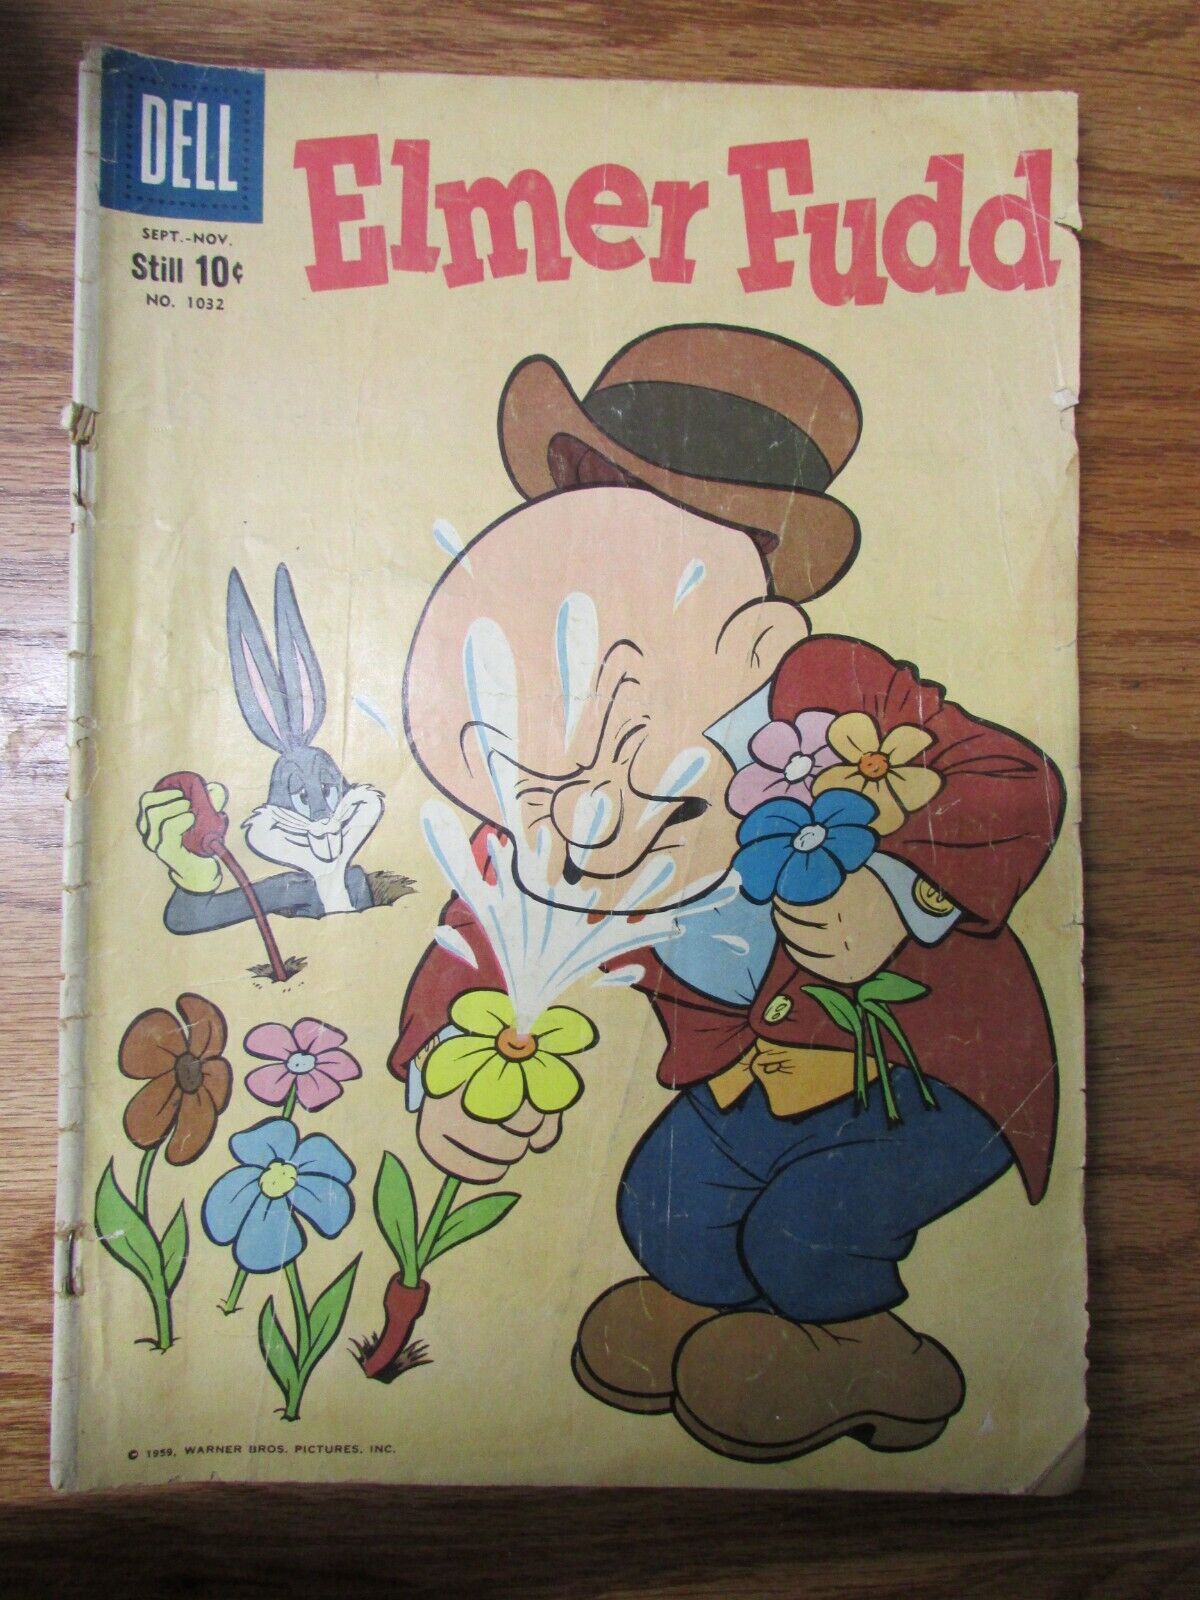 Vintage Dell Comics Elmer Fudd Warner Bros Buggs Bunny No 1032 Sept-Nov 1959